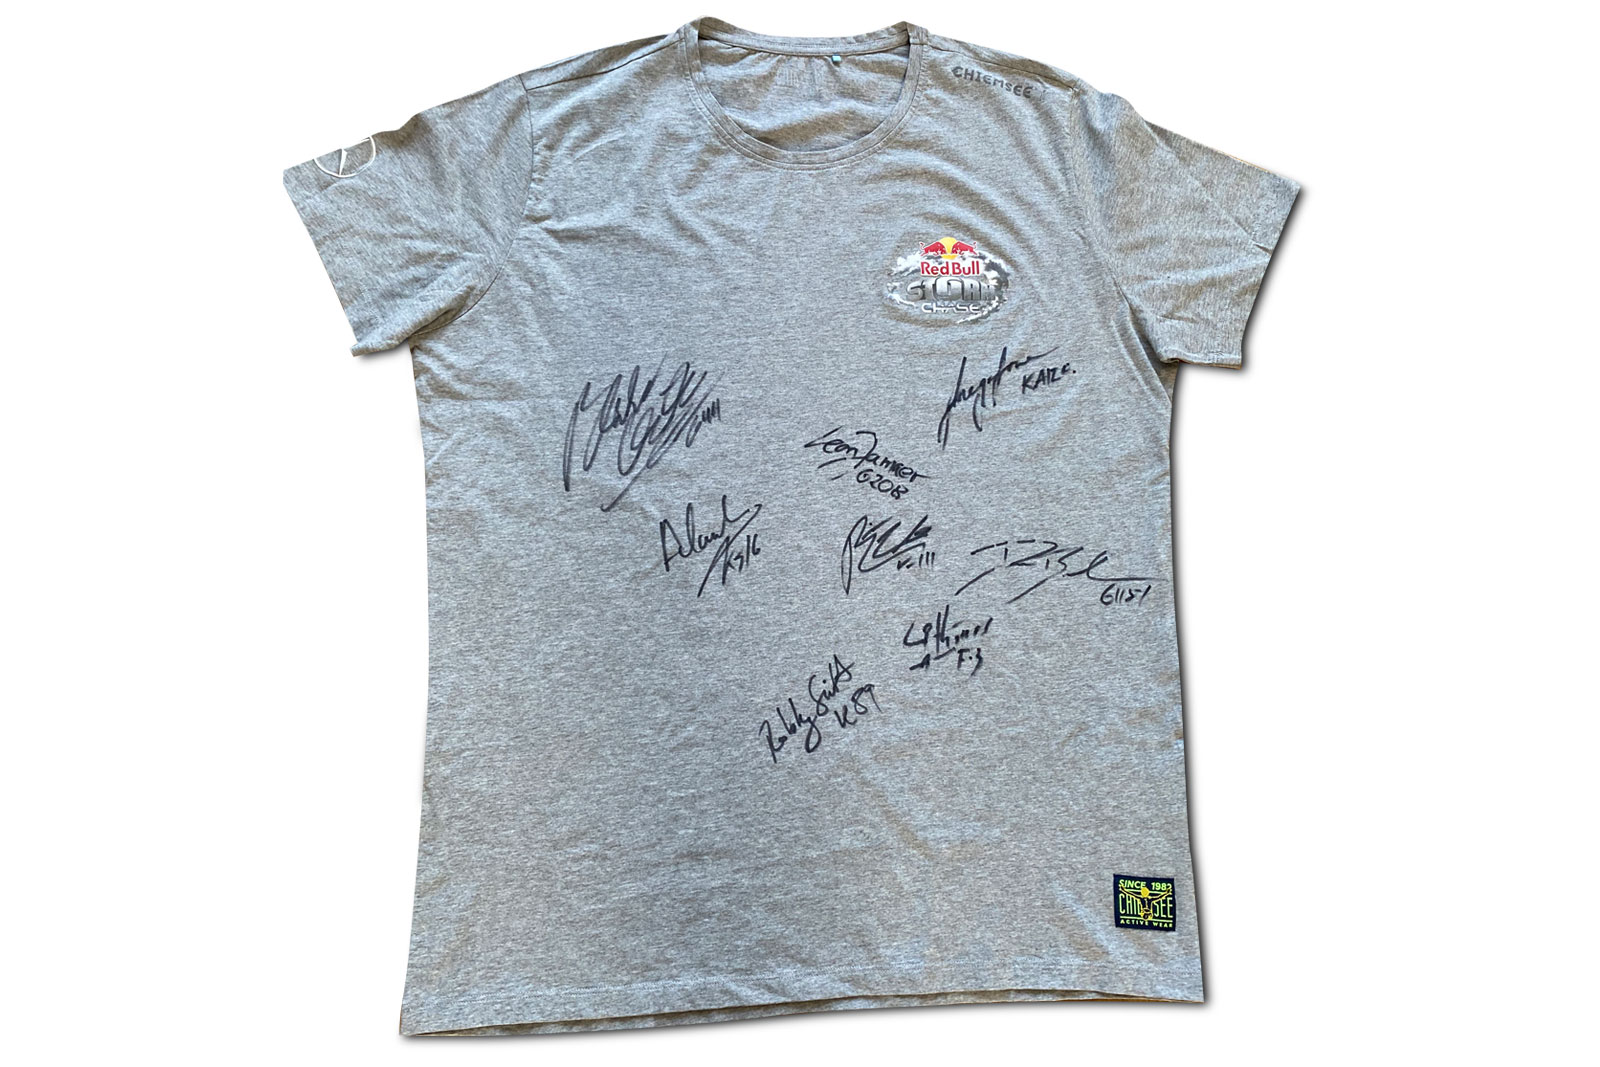 Signiertes Red Bull Storm Chase Shirt gewinnen!